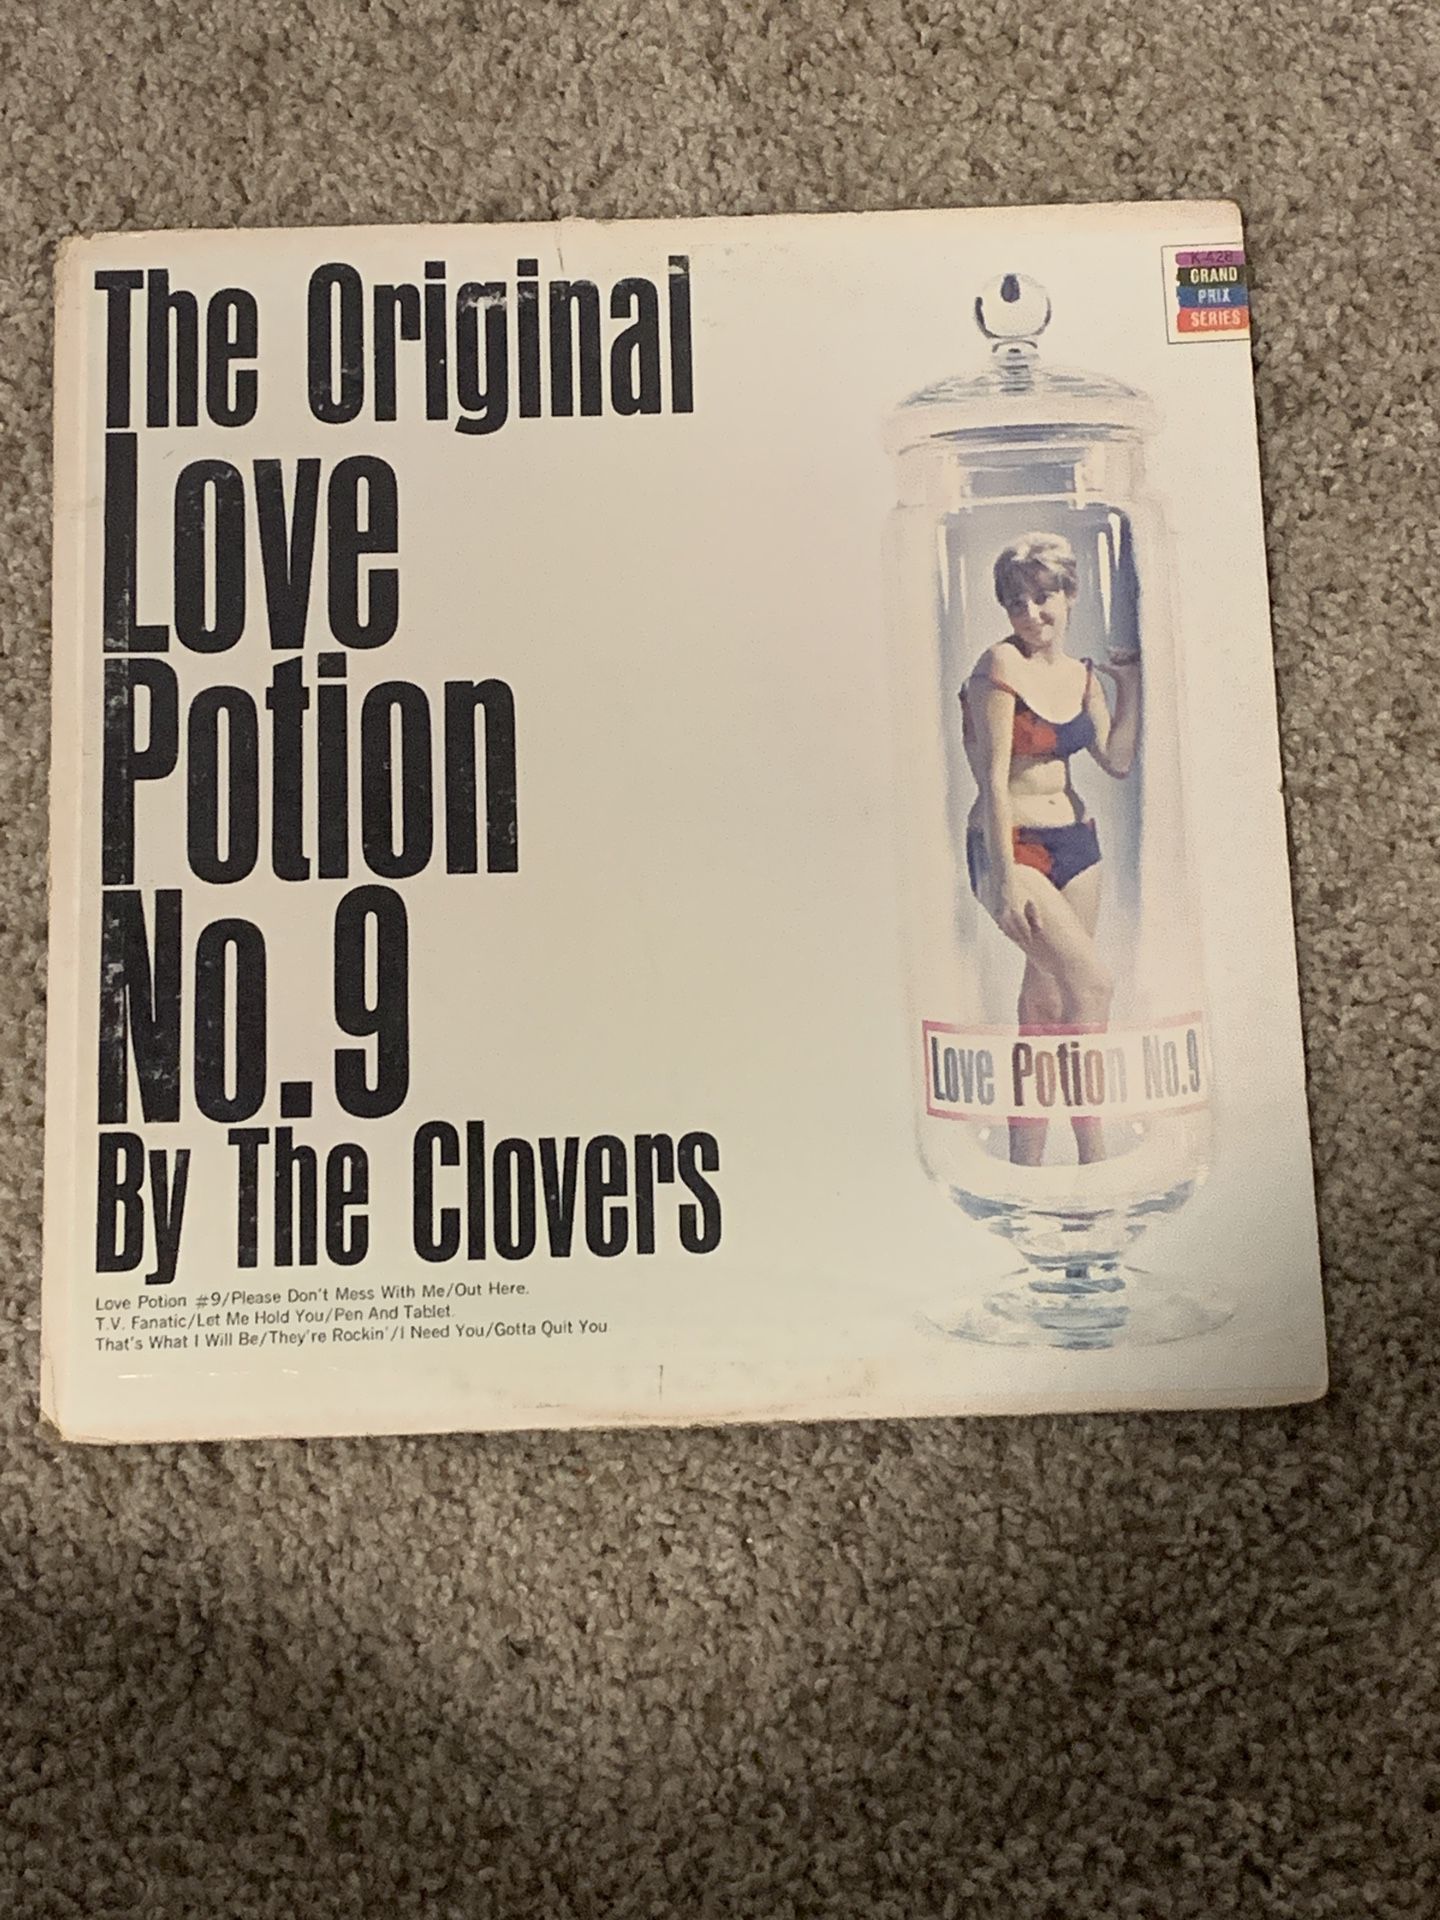 The Clovers: The Original Love Potion No. 9 LP Vinyl